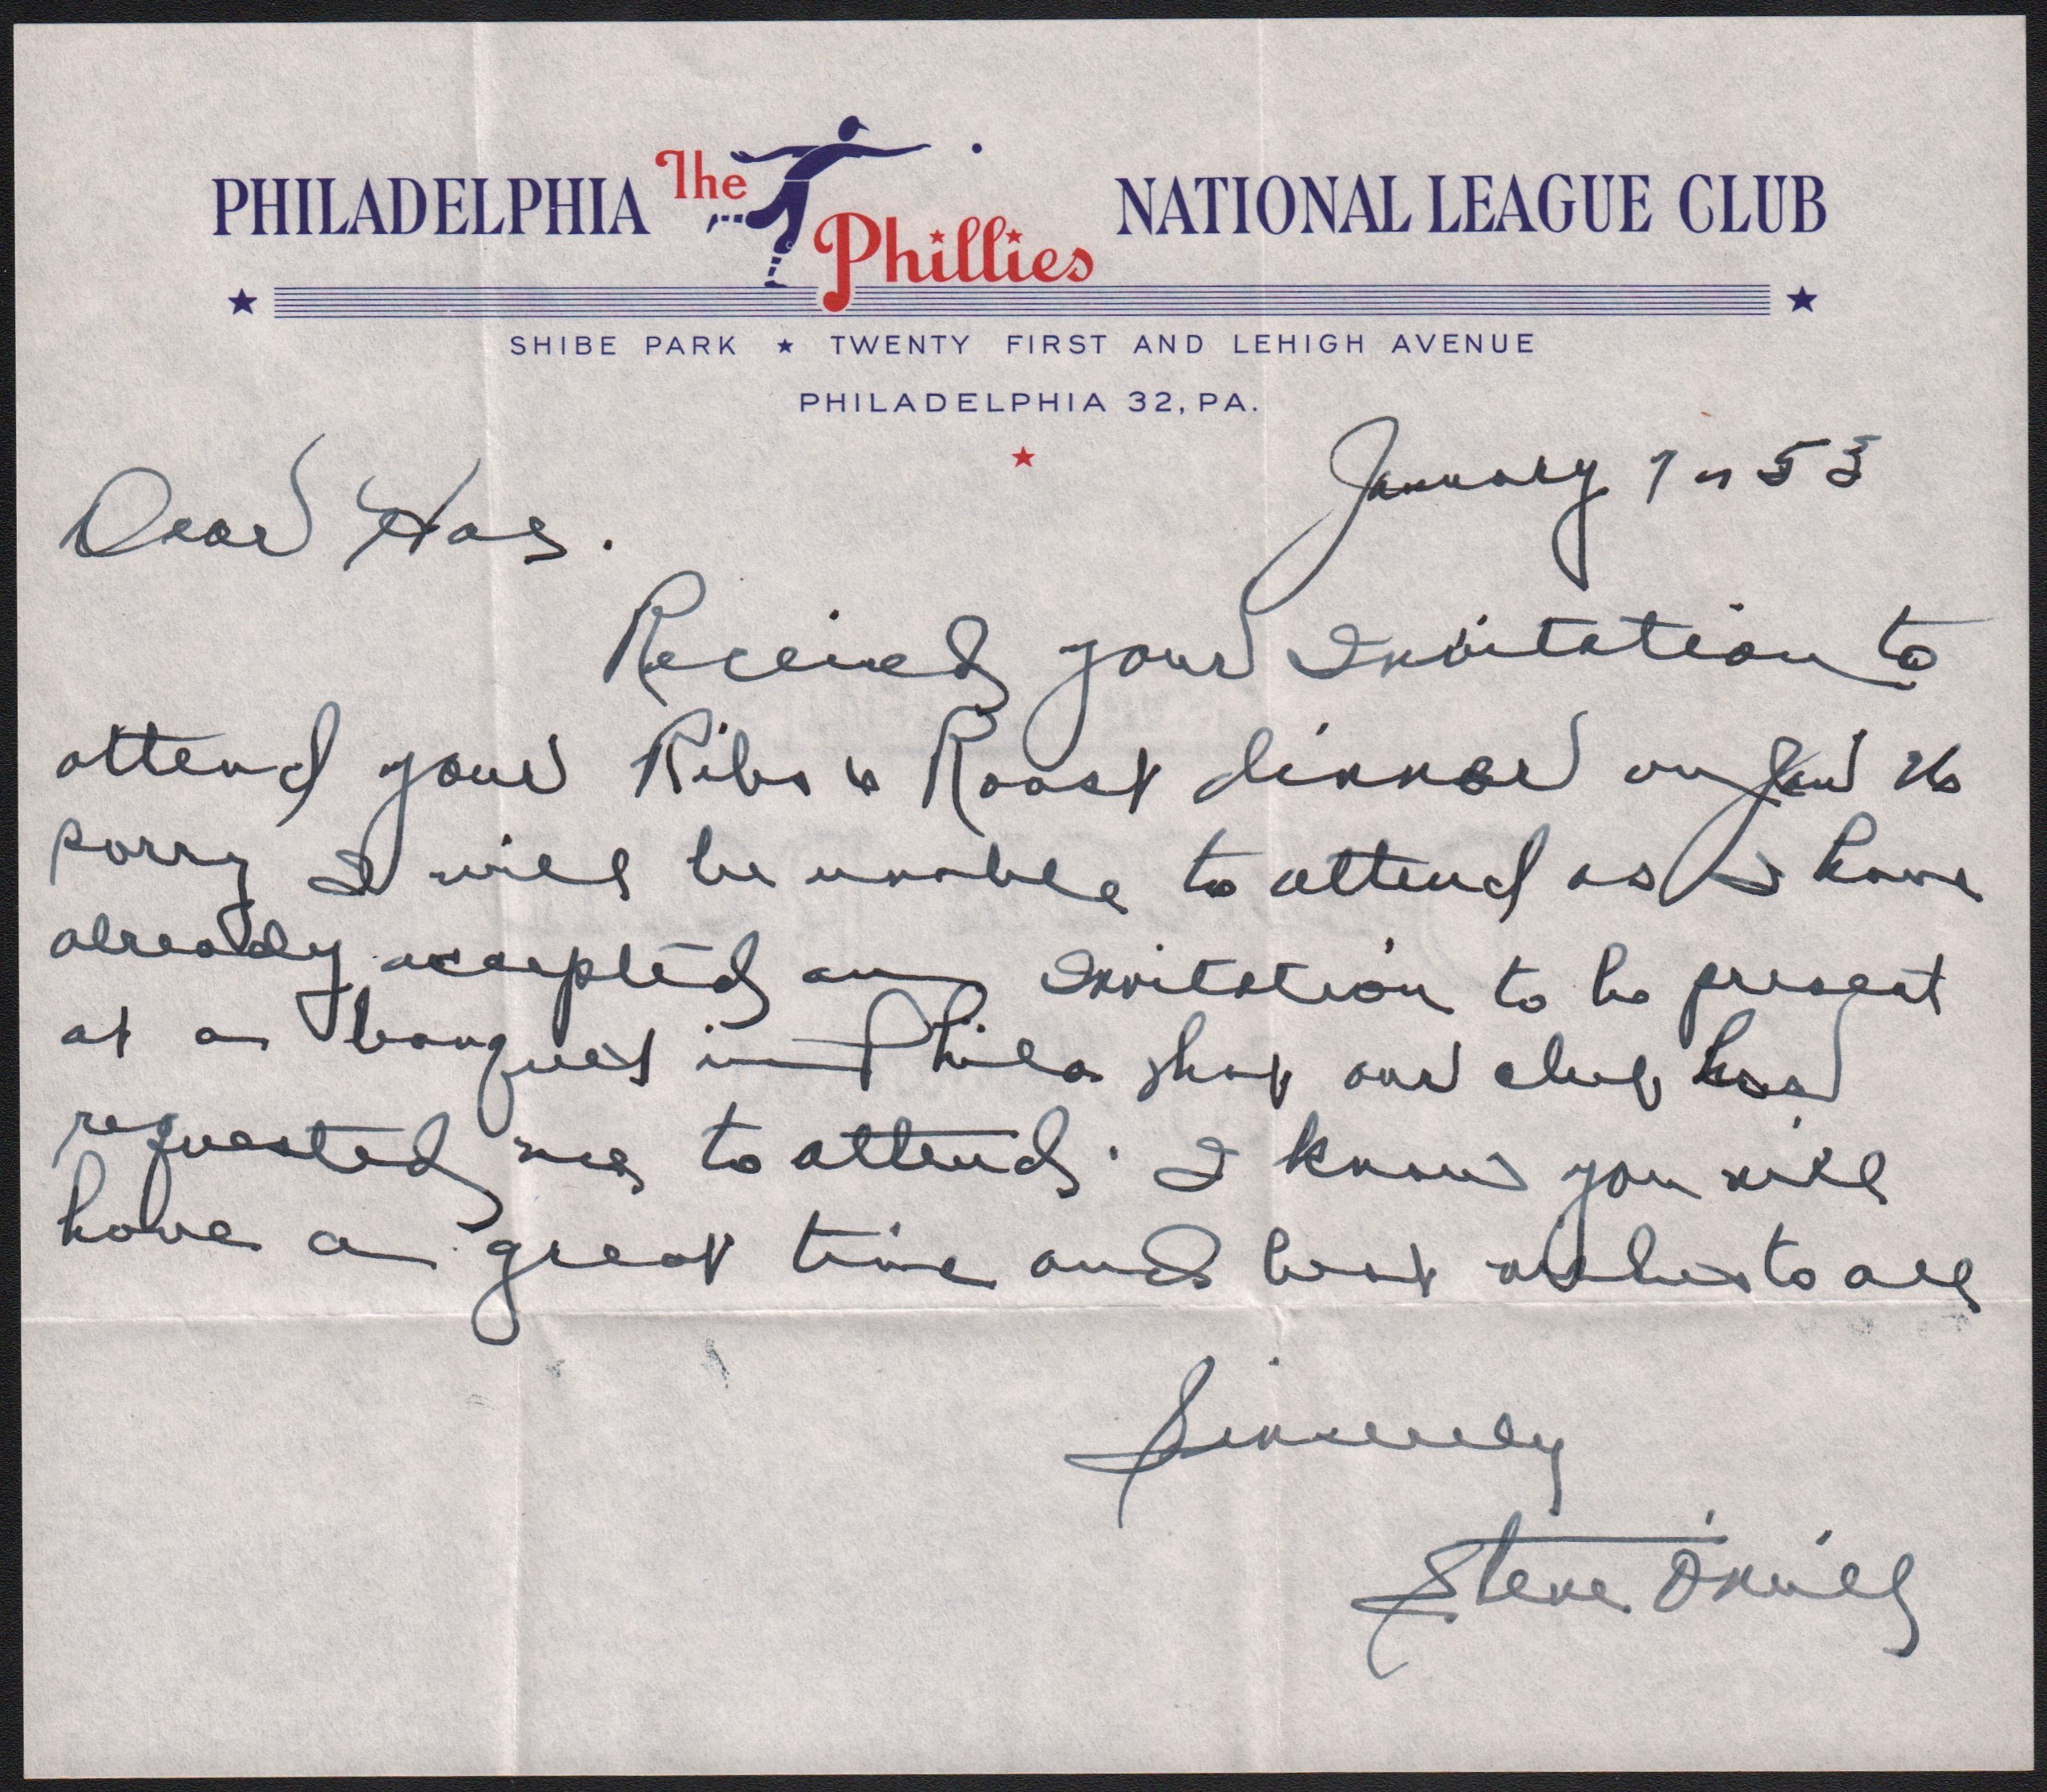 Baseball Autographs - 1953 Steve O'Neill Signed Handwritten Letter on Philadelphia Phillies Stationery